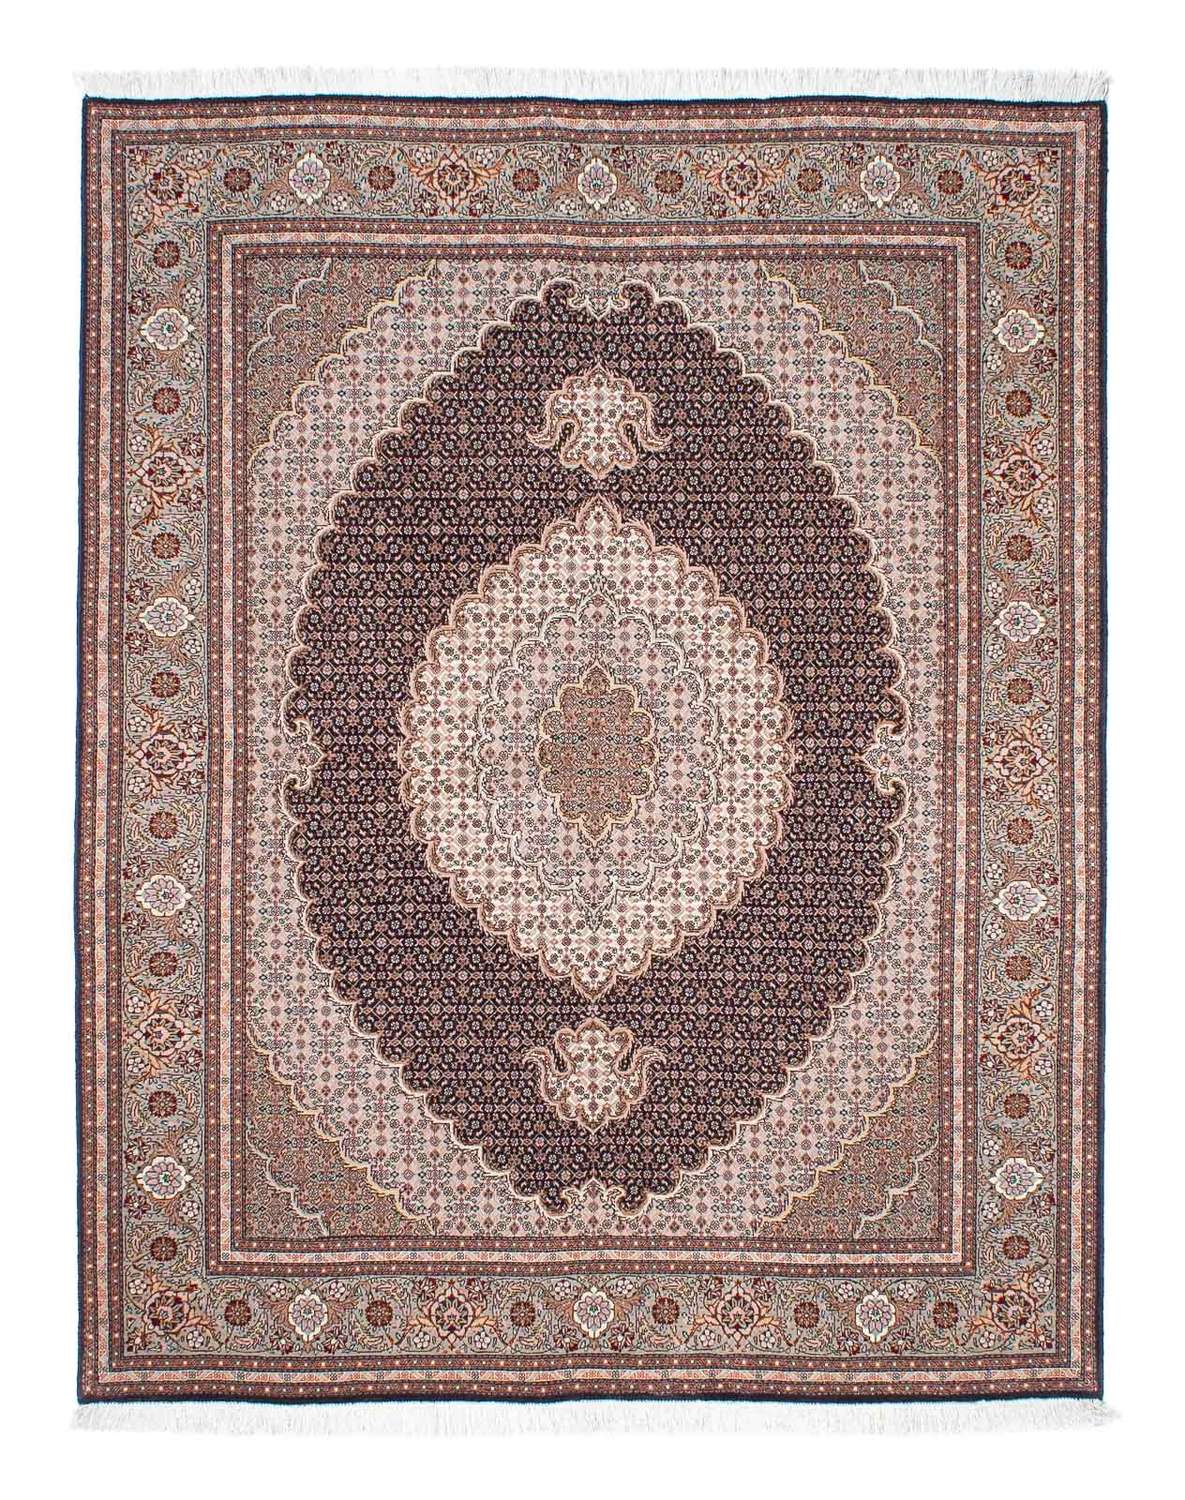 Tapete Persa - Tabriz - 187 x 150 cm - castanho claro